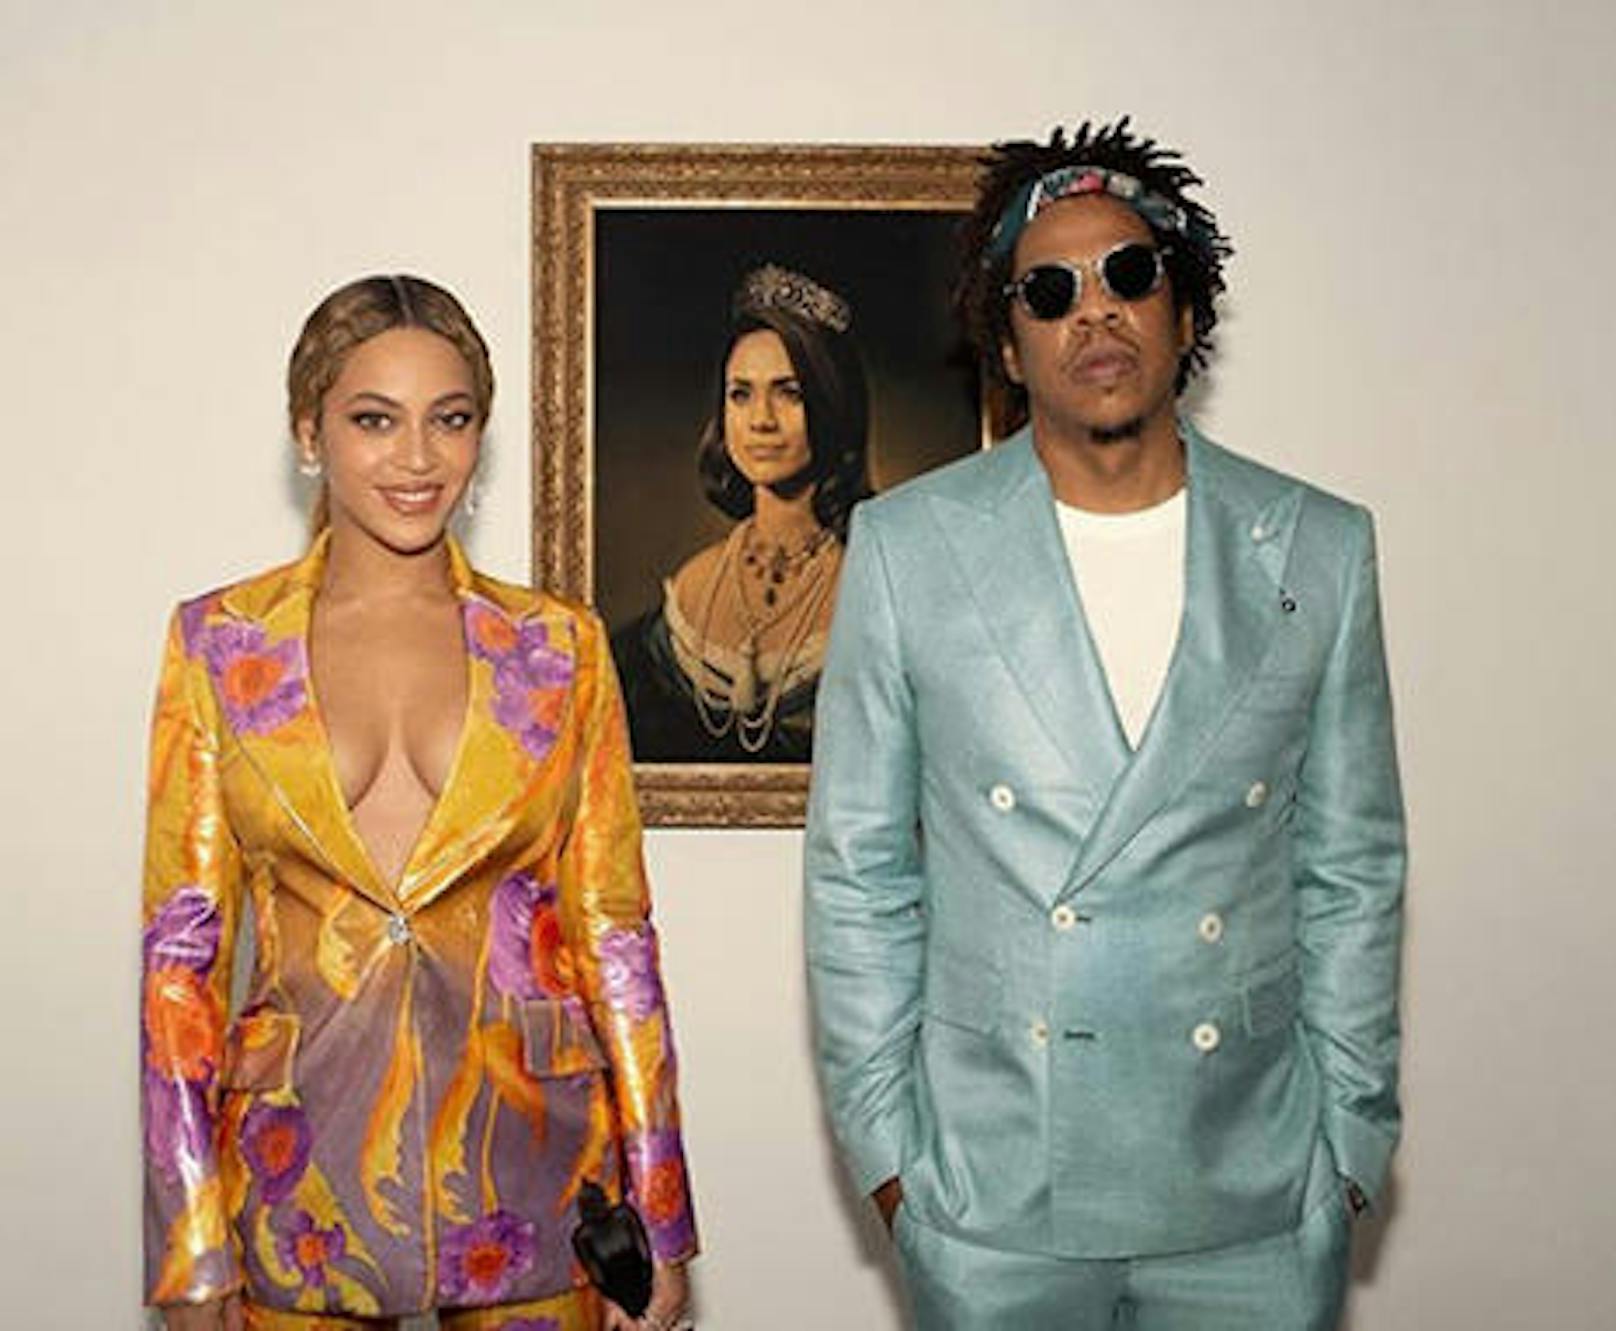 Beyonce und Jay-Z waren bei den Brit Awards nicht selbst anwesend, um ihren Preis als Best International Group entgegenzunehmen. Stattdessen schickten sie ein Dankesvideo. Die Schau wurde ihnen allerdings von einem Gemälde im Hintergrund gestohlen. Maler Tim O'Brien verewigte Meghan Markle als Königin. Echter US-Kitsch halt.